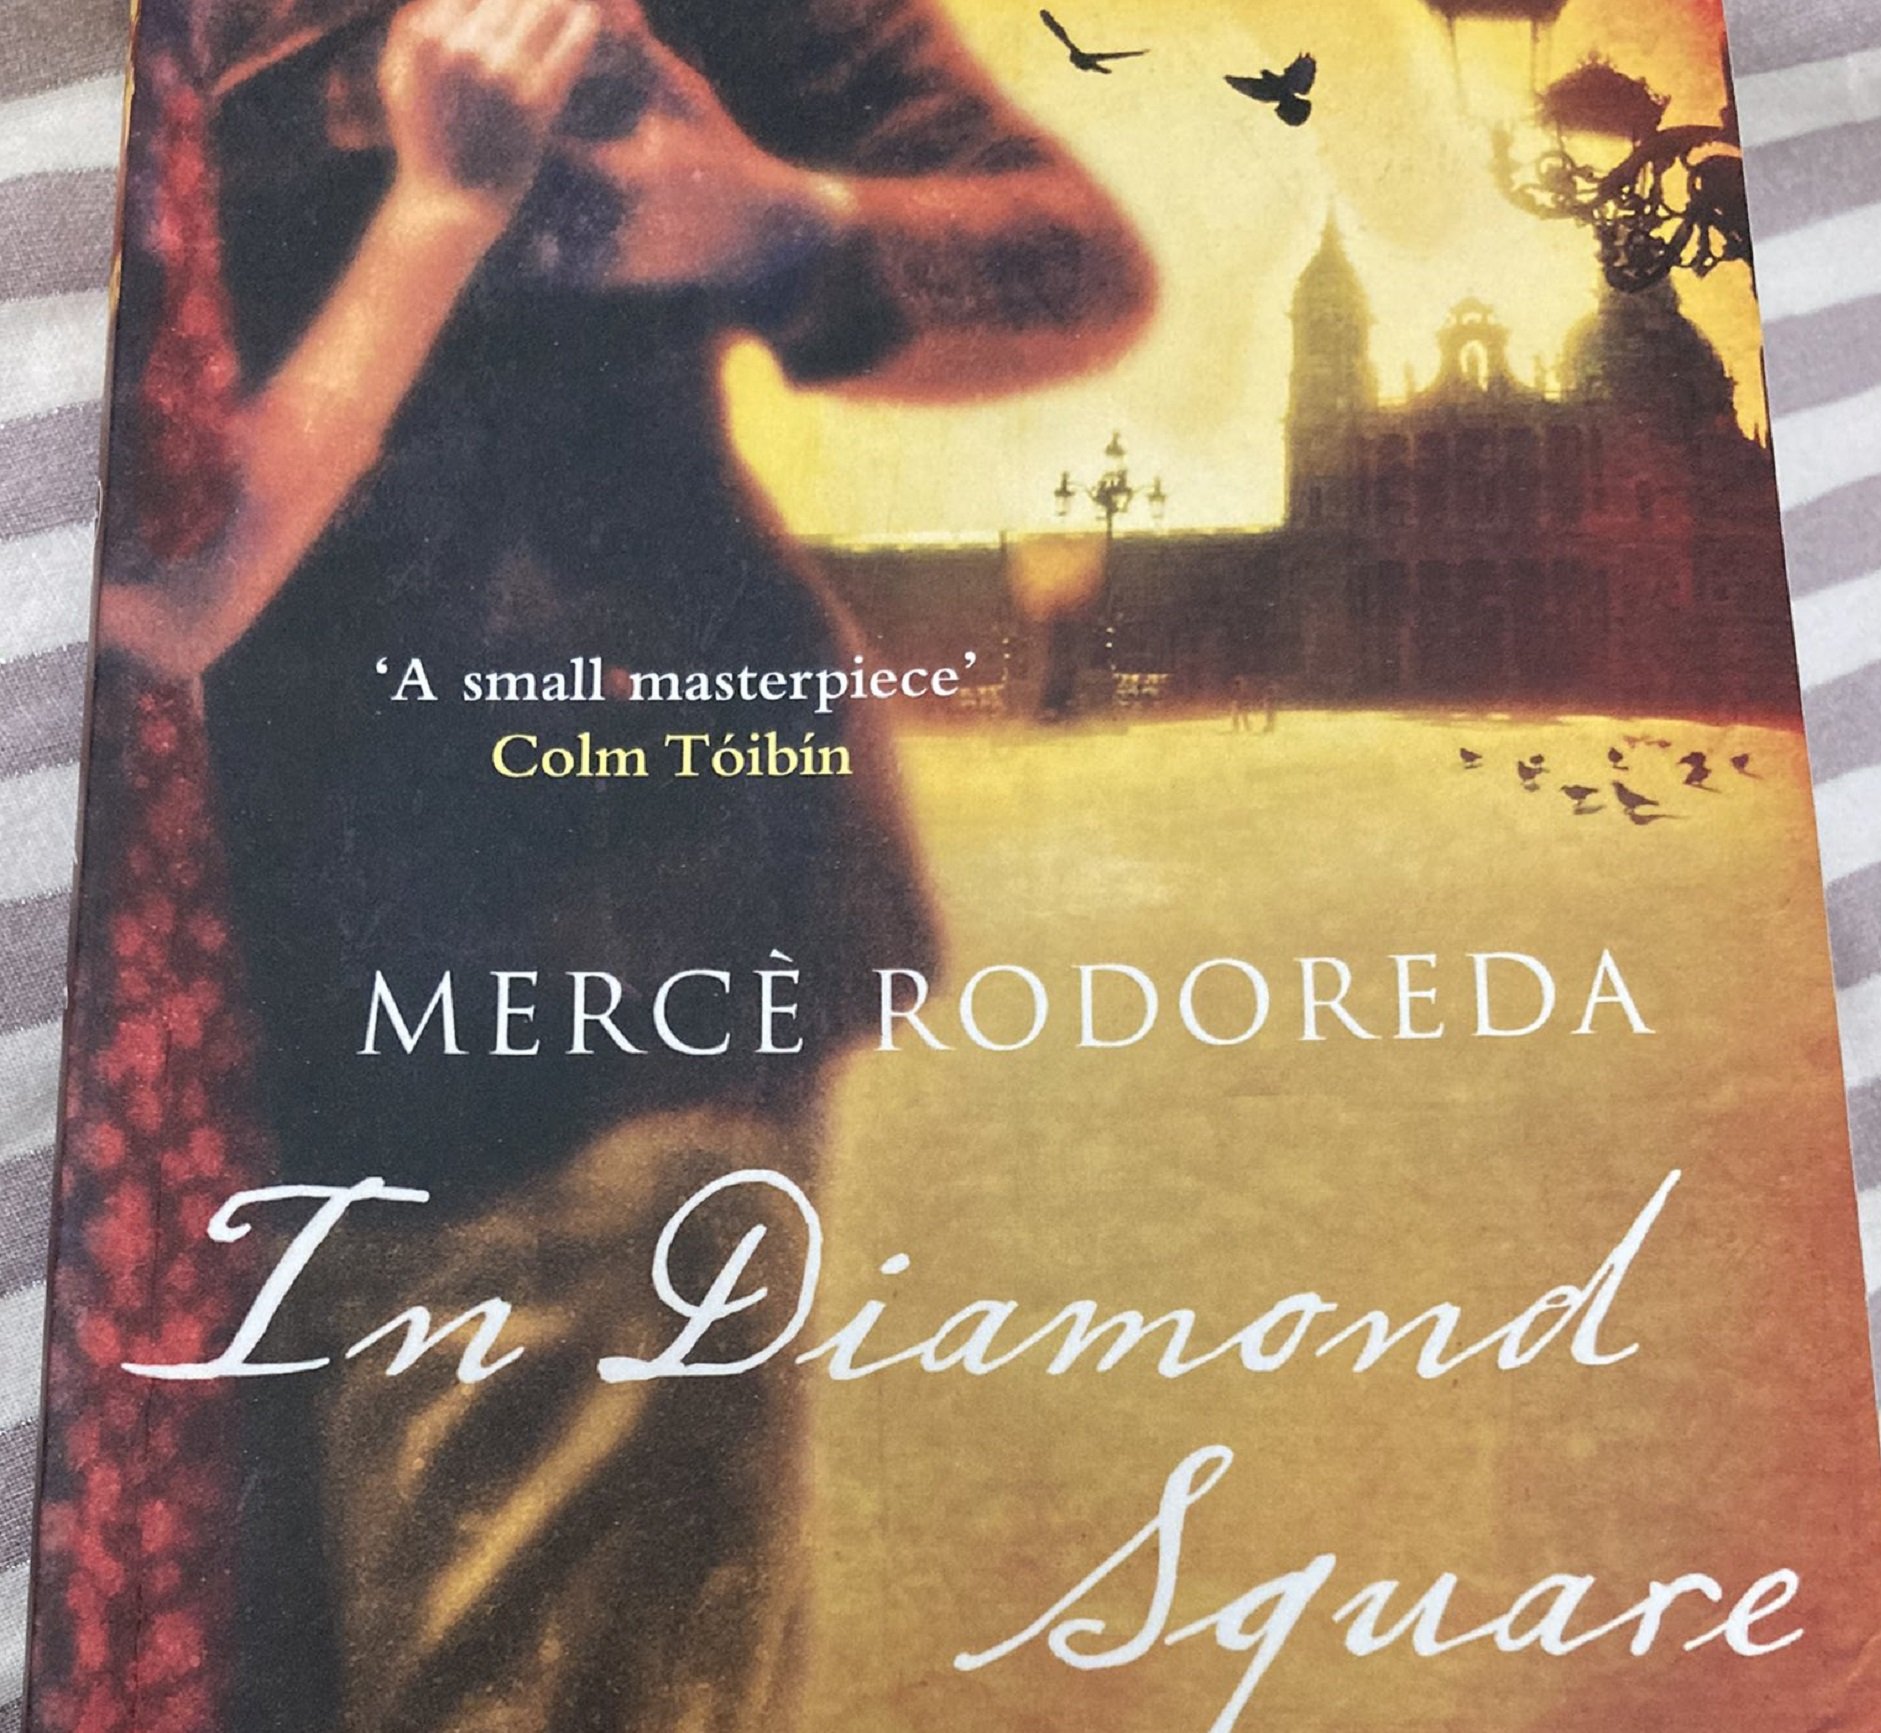 Una traducción inglesa de 'La plaça del Diamant' de Mercè Rodoreda enciende  las redes sociales